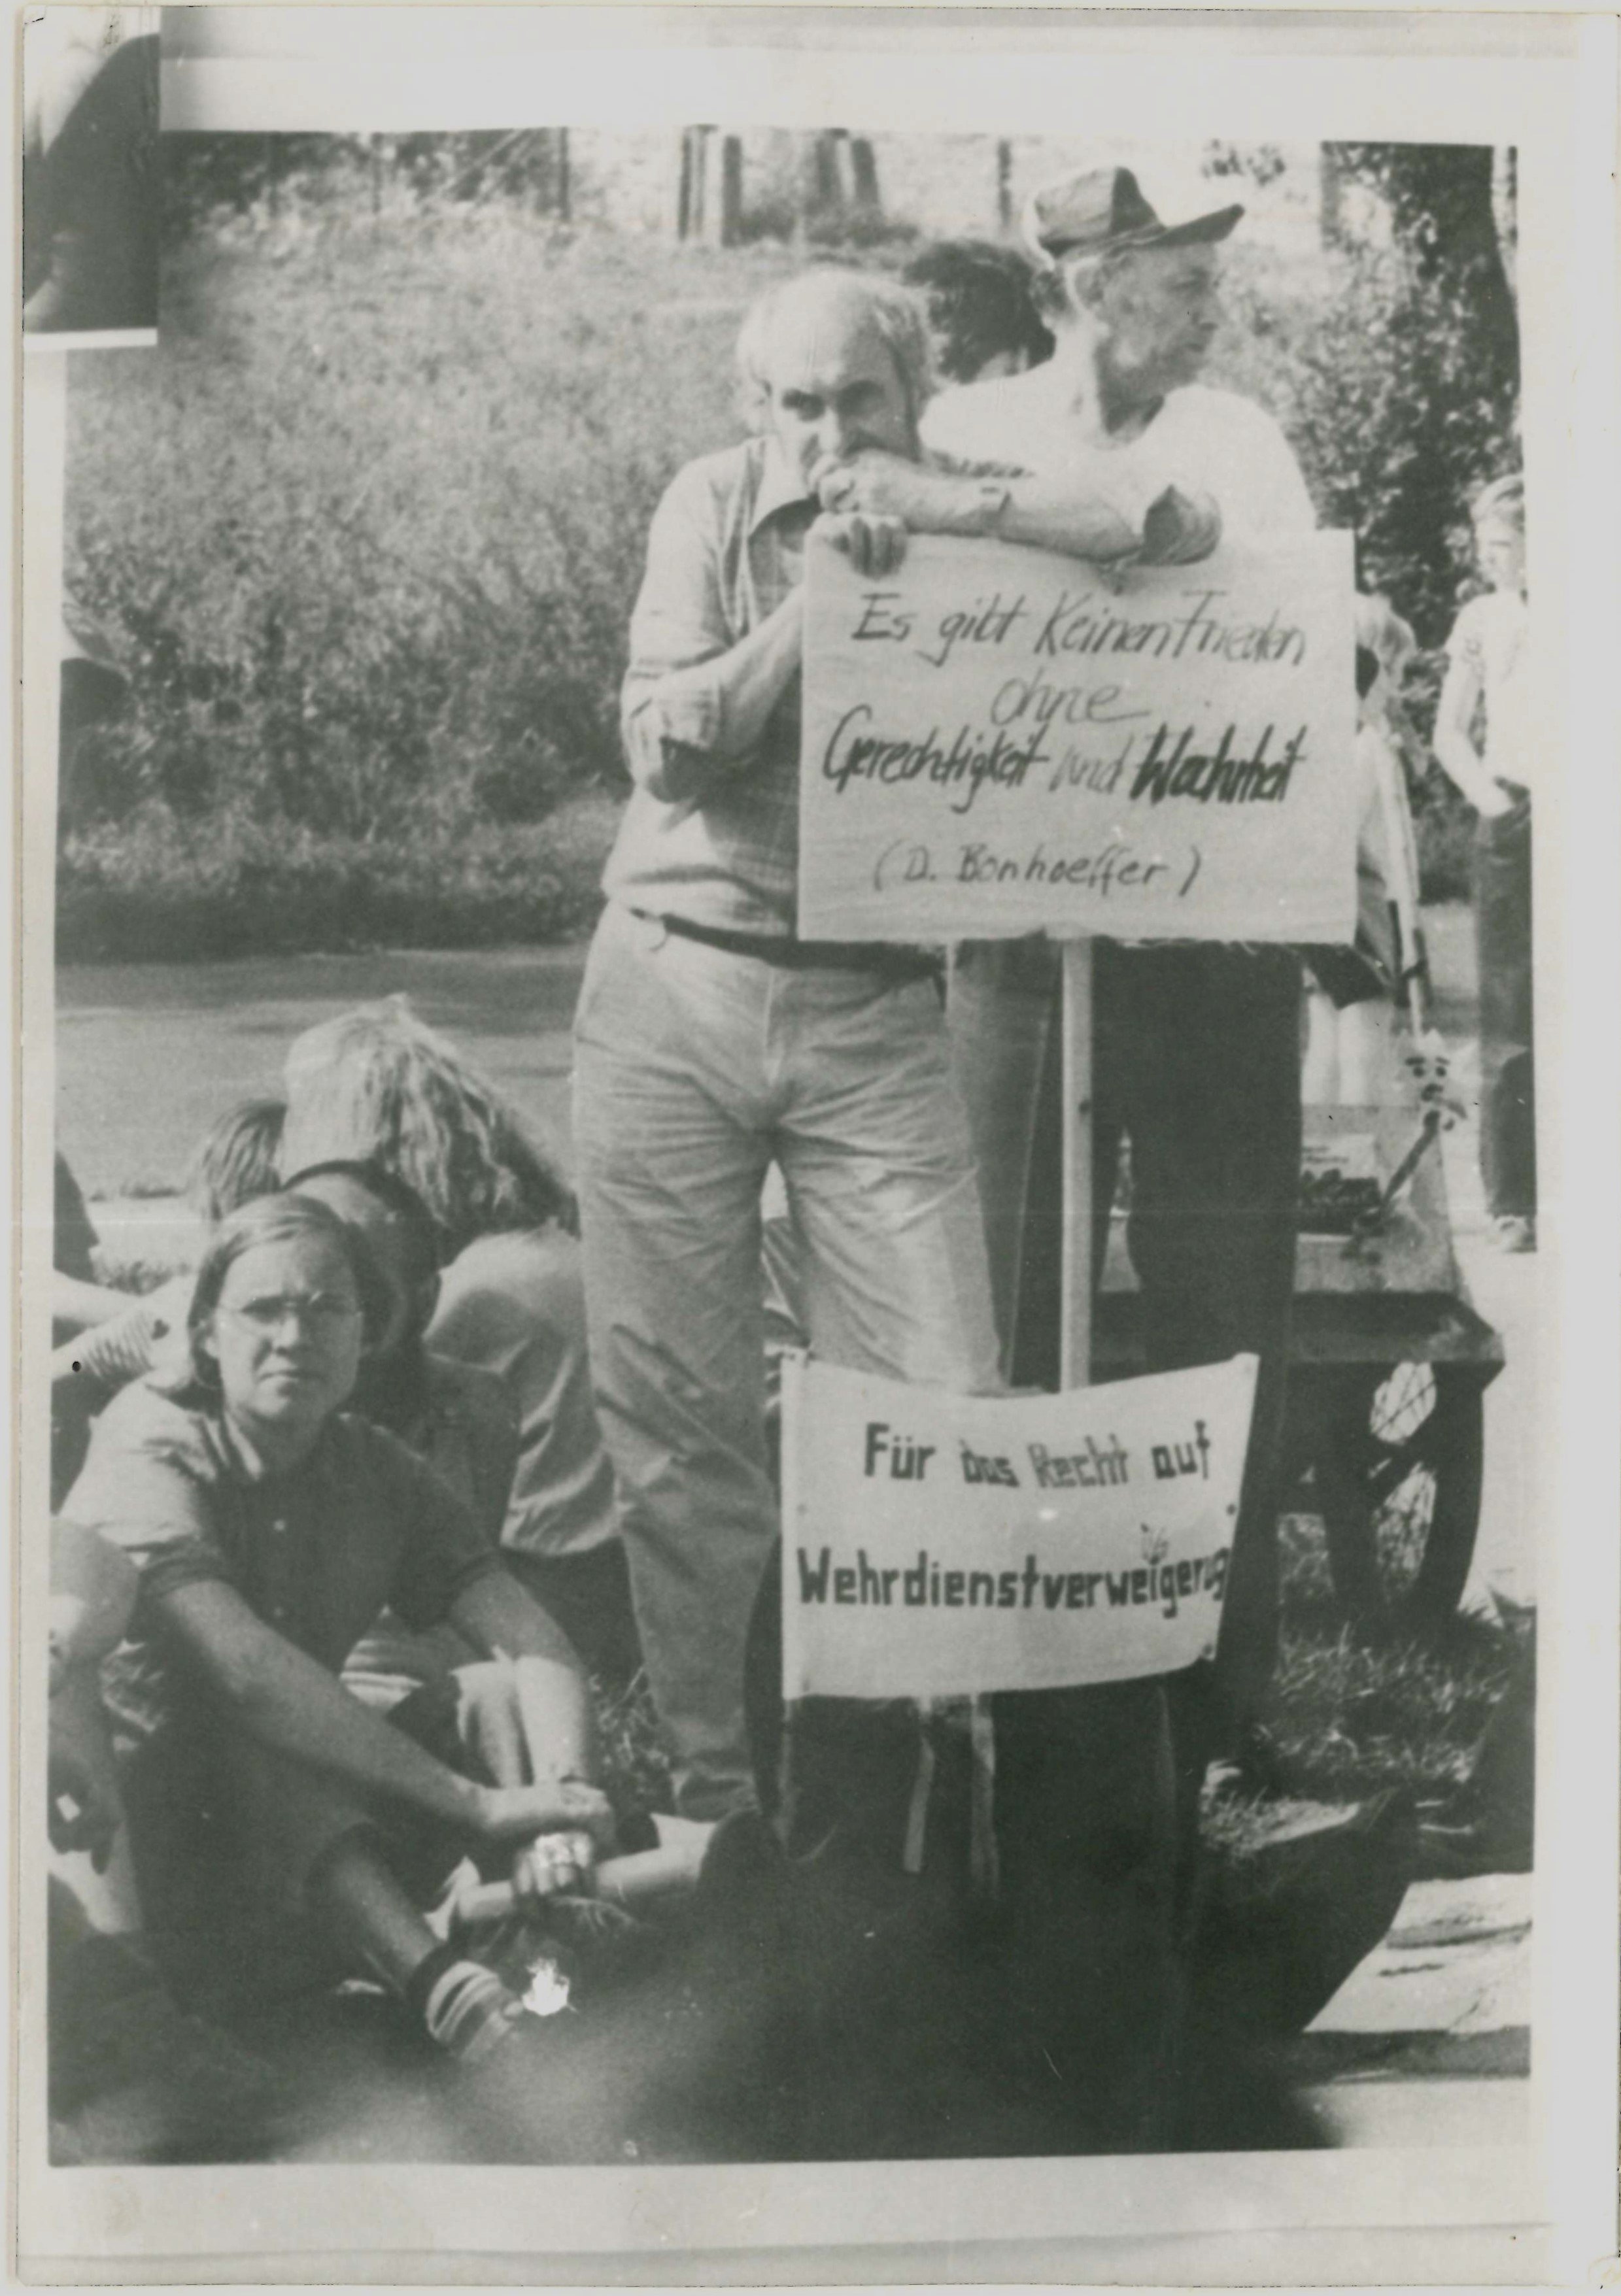 Olof-Palme-Marsch 1987: Teilnehmer mit Plakat: "Für das Recht auf Wehrdienstverweigerung" (DDR Geschichtsmuseum im Dokumentationszentrum Perleberg CC BY-SA)